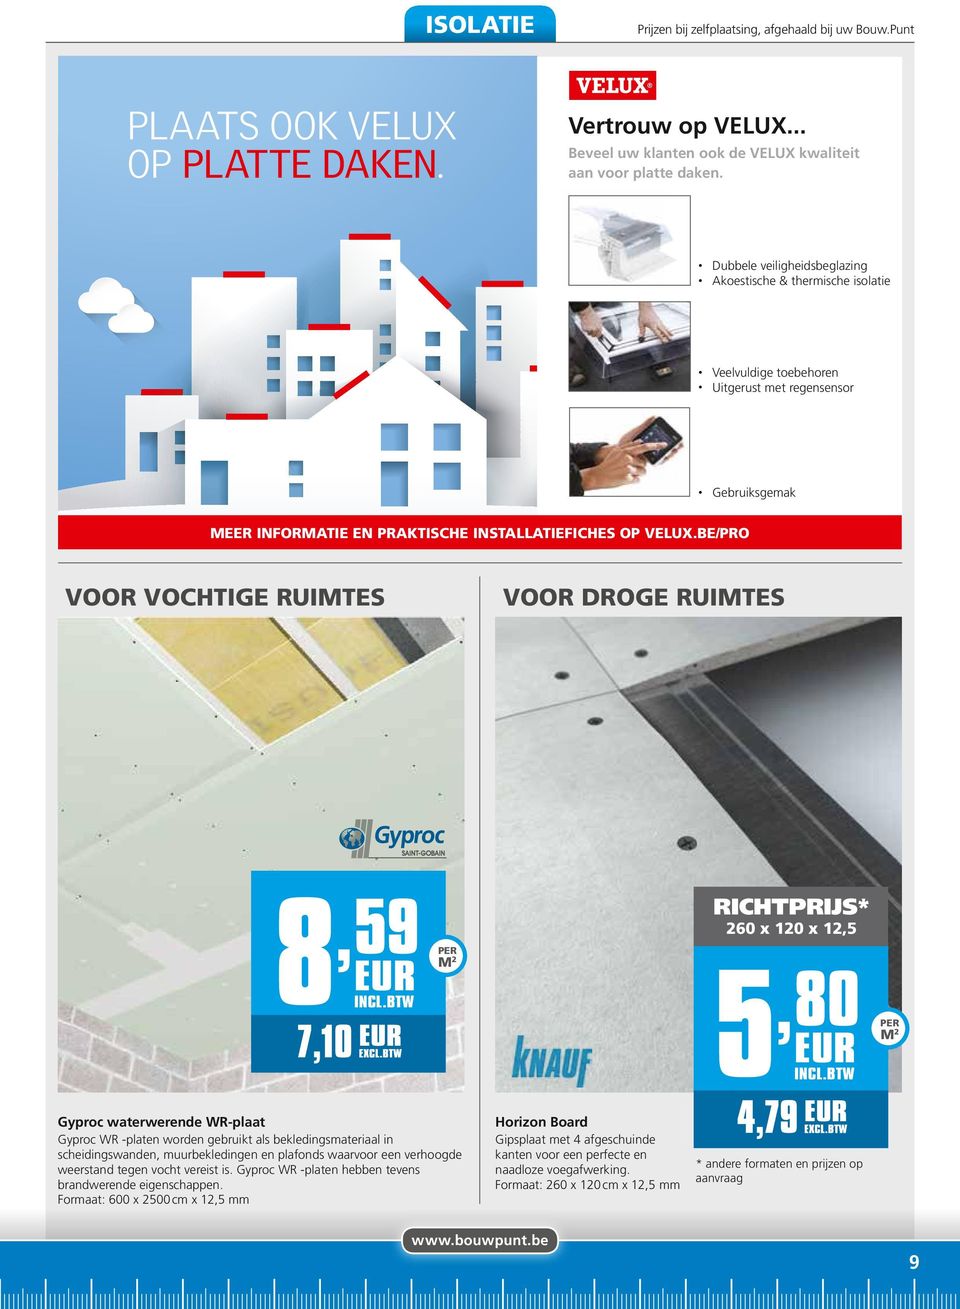 Beveel uw klanten ook de VELUX kwaliteit aan voor platte daken.